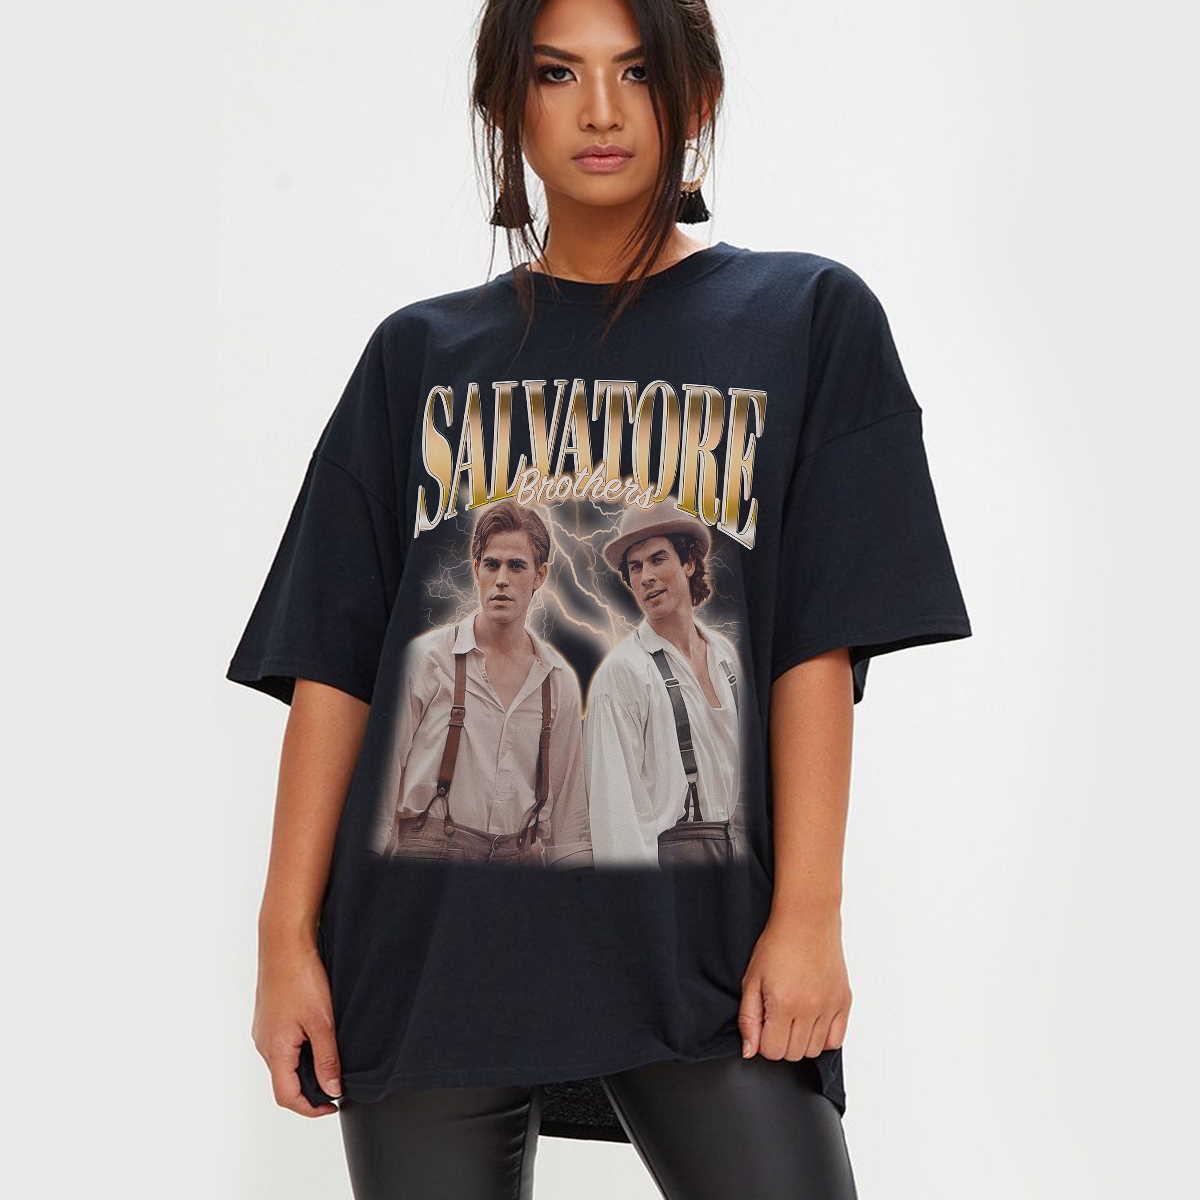 Salvatore Brother’s Shirt, Stefan Salvatore Shirt